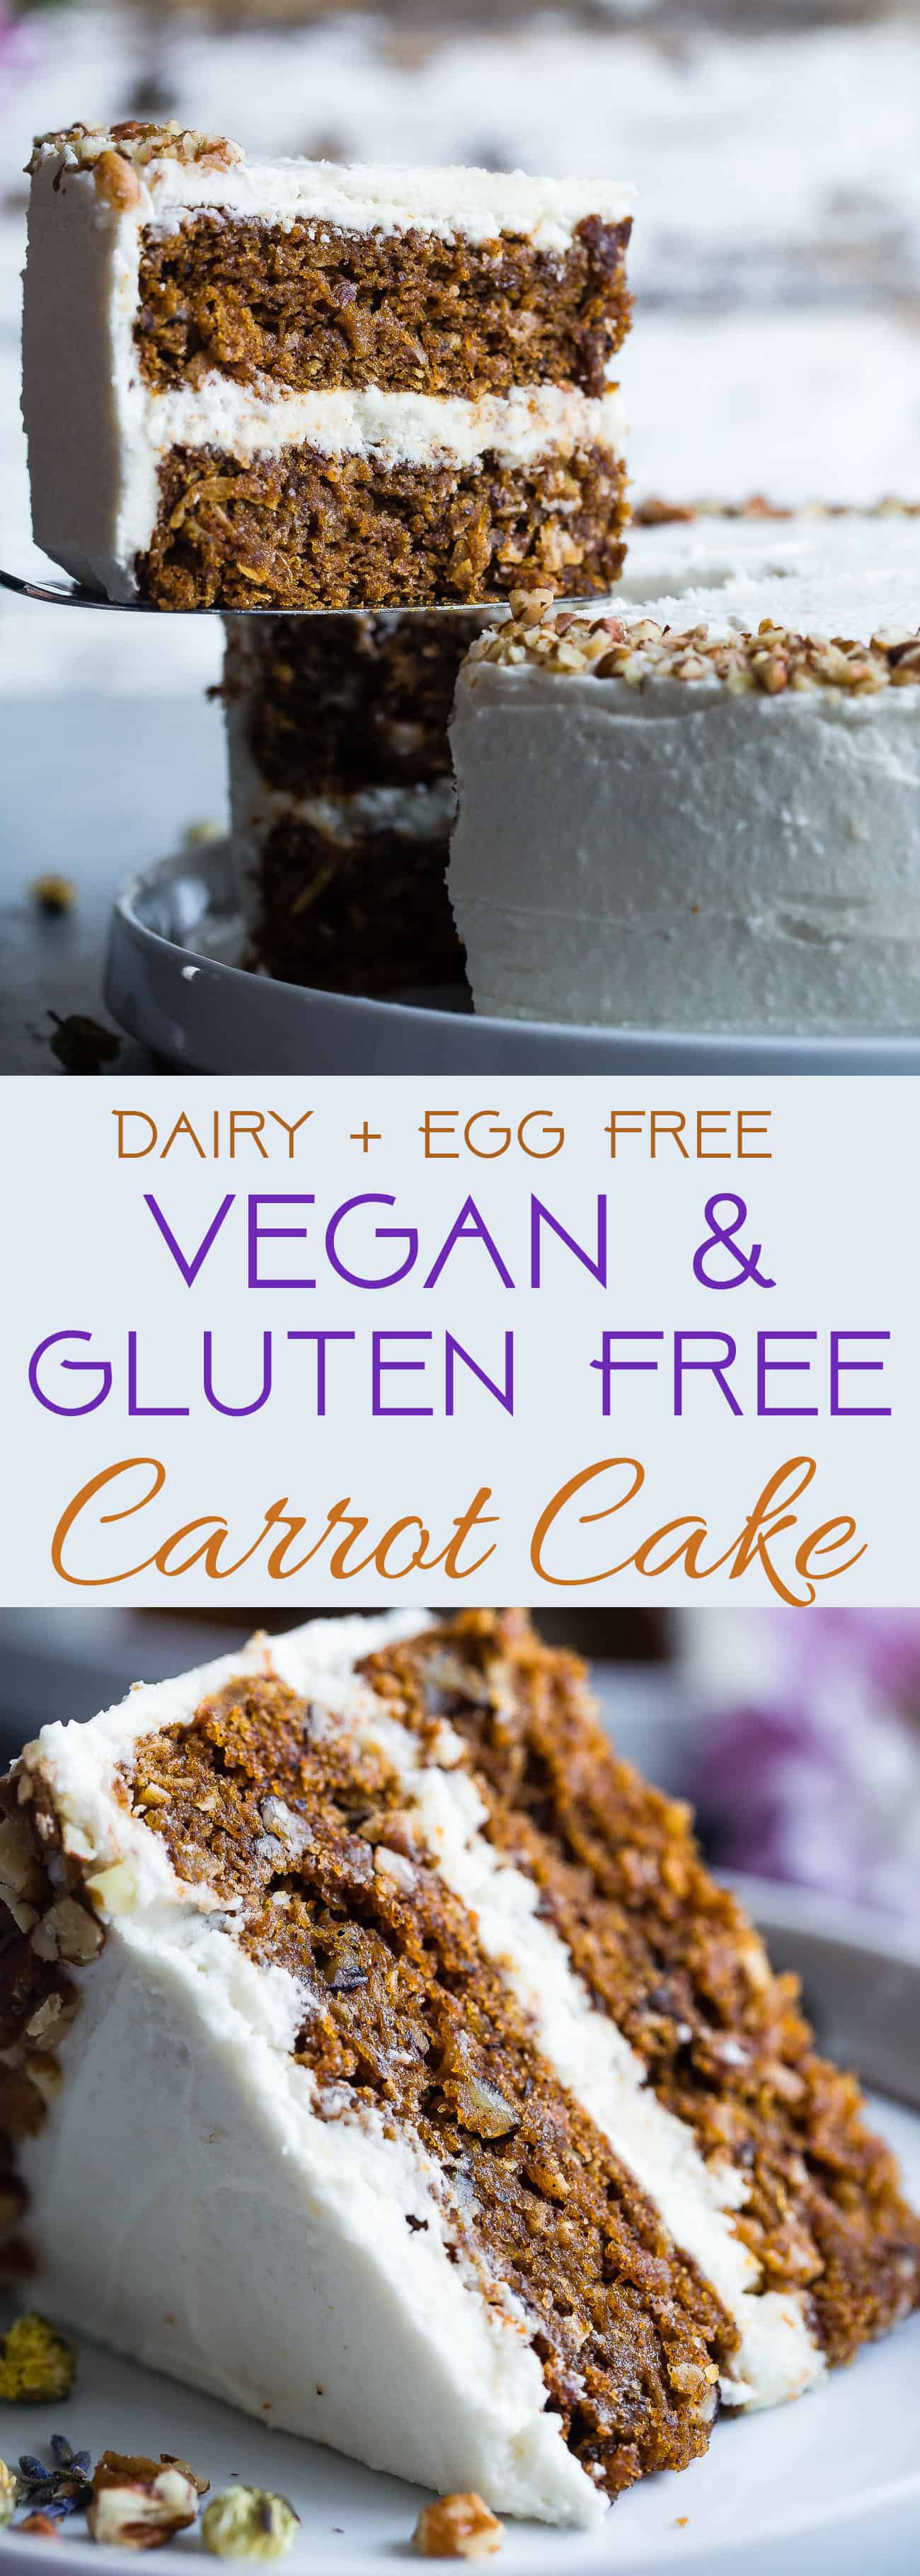 Gluten Free Dairy Free Carrot Cake
 Vegan Gluten Free Dairy Free Carrot Cake